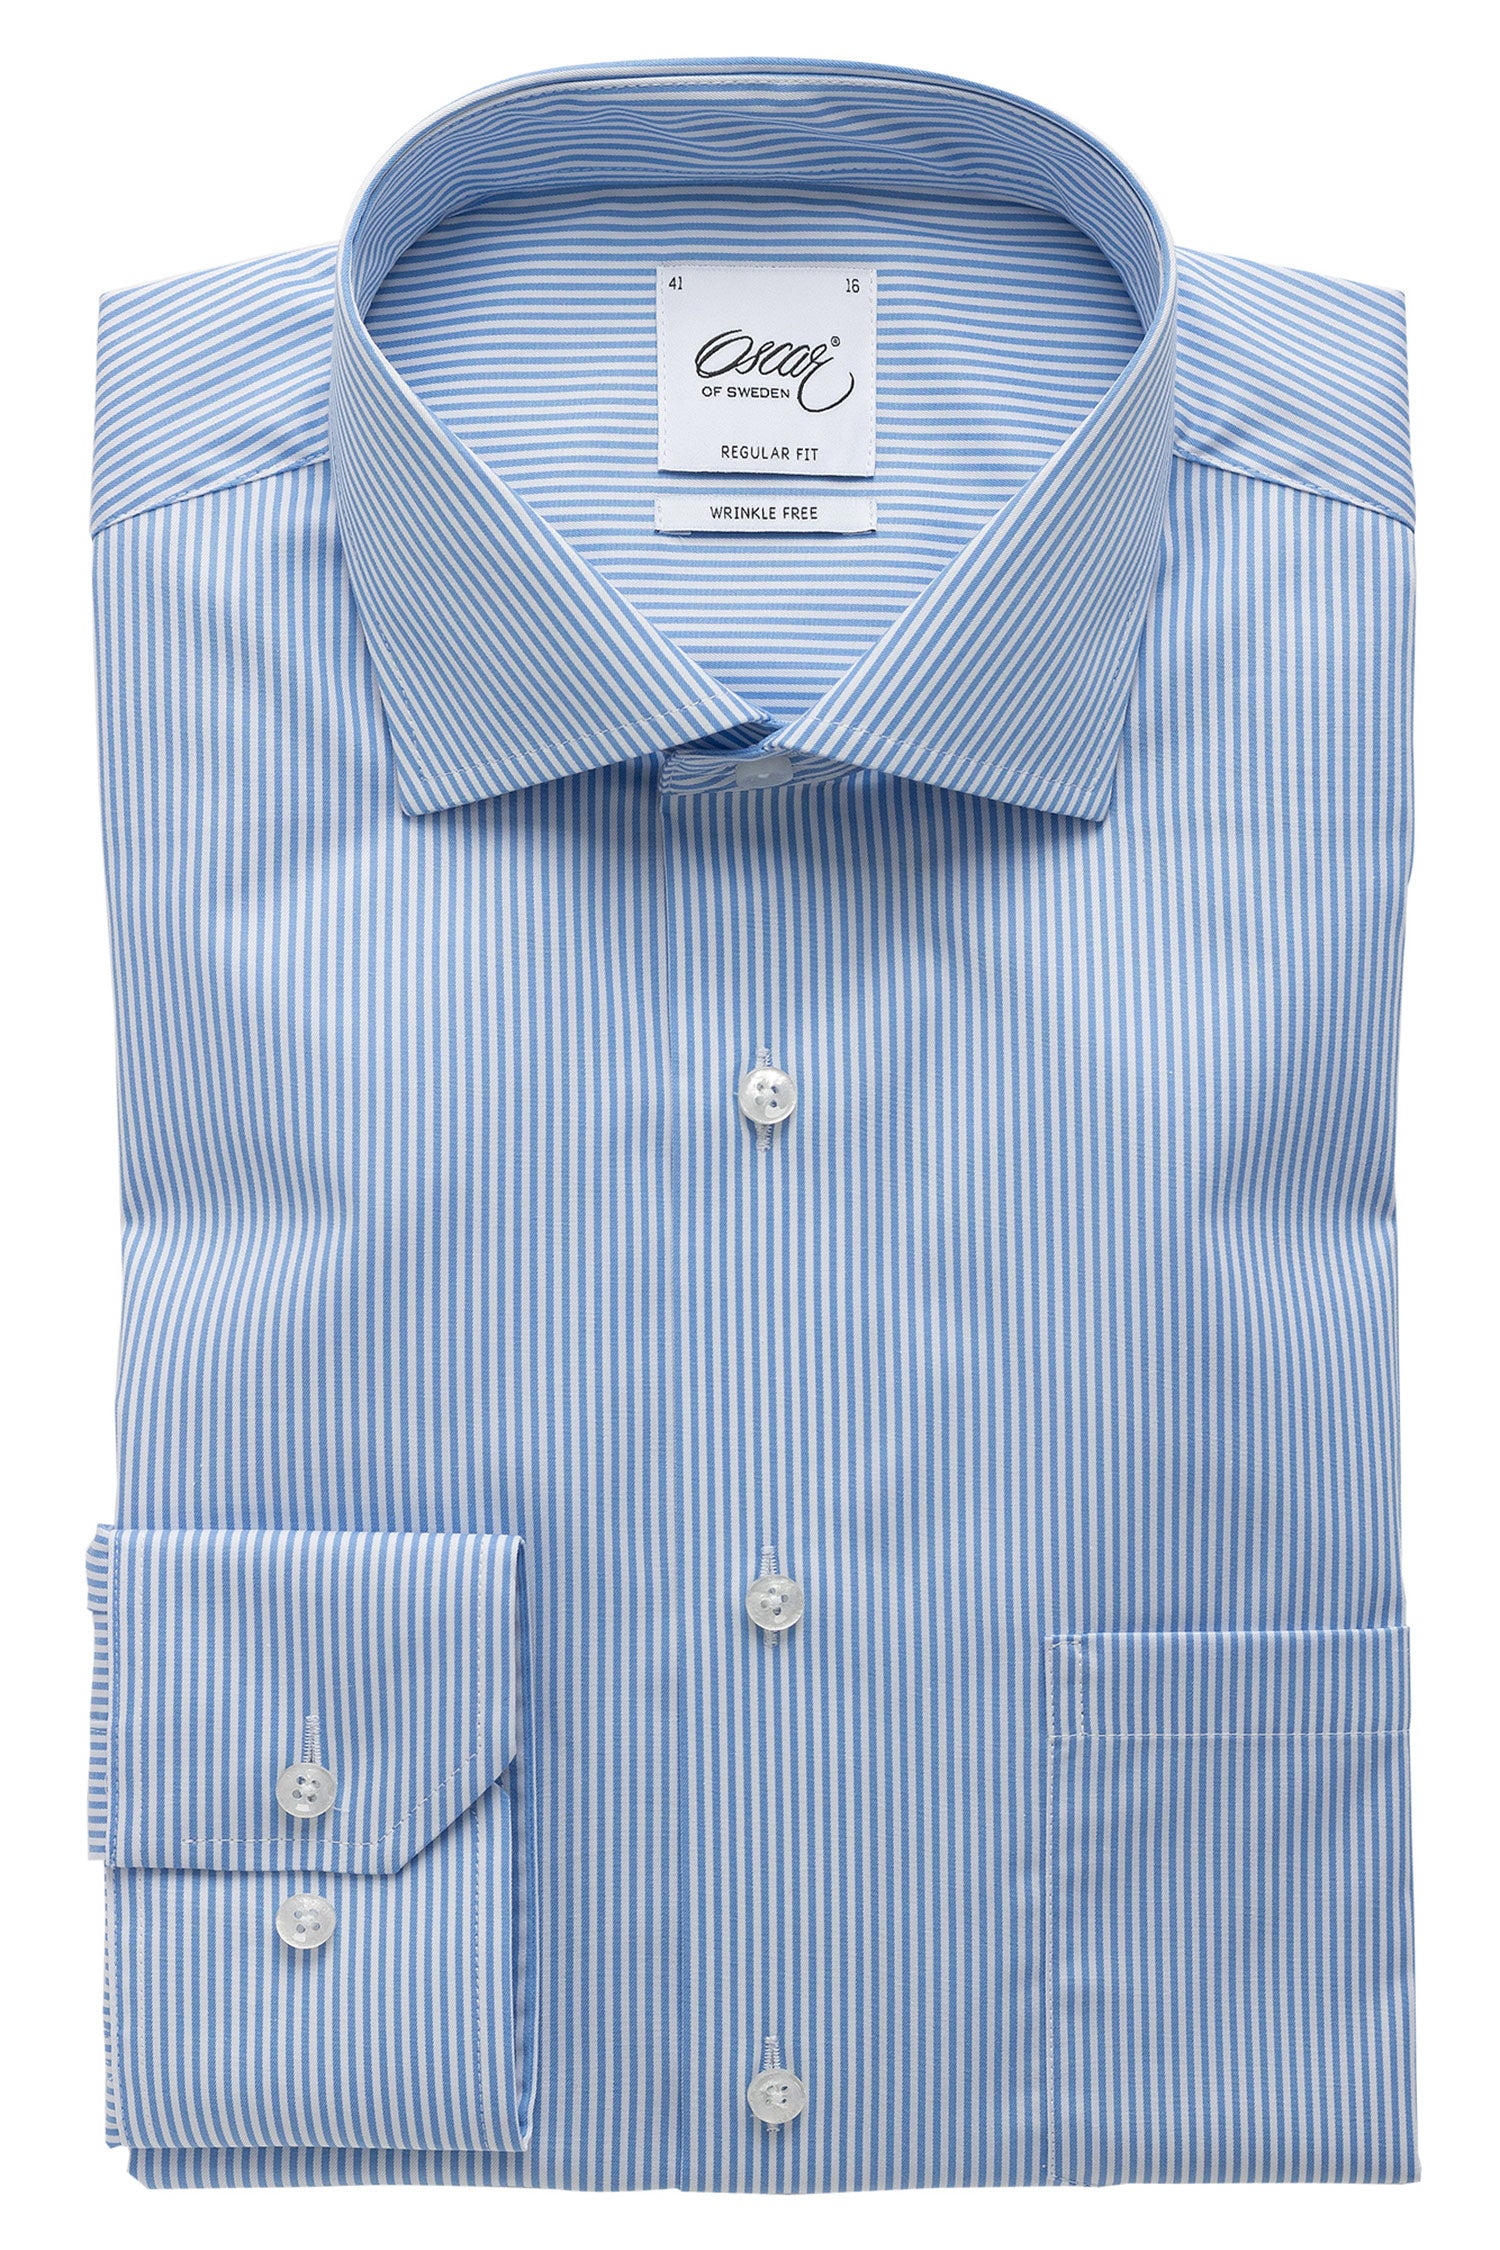 Light blue striped regular fit shirt